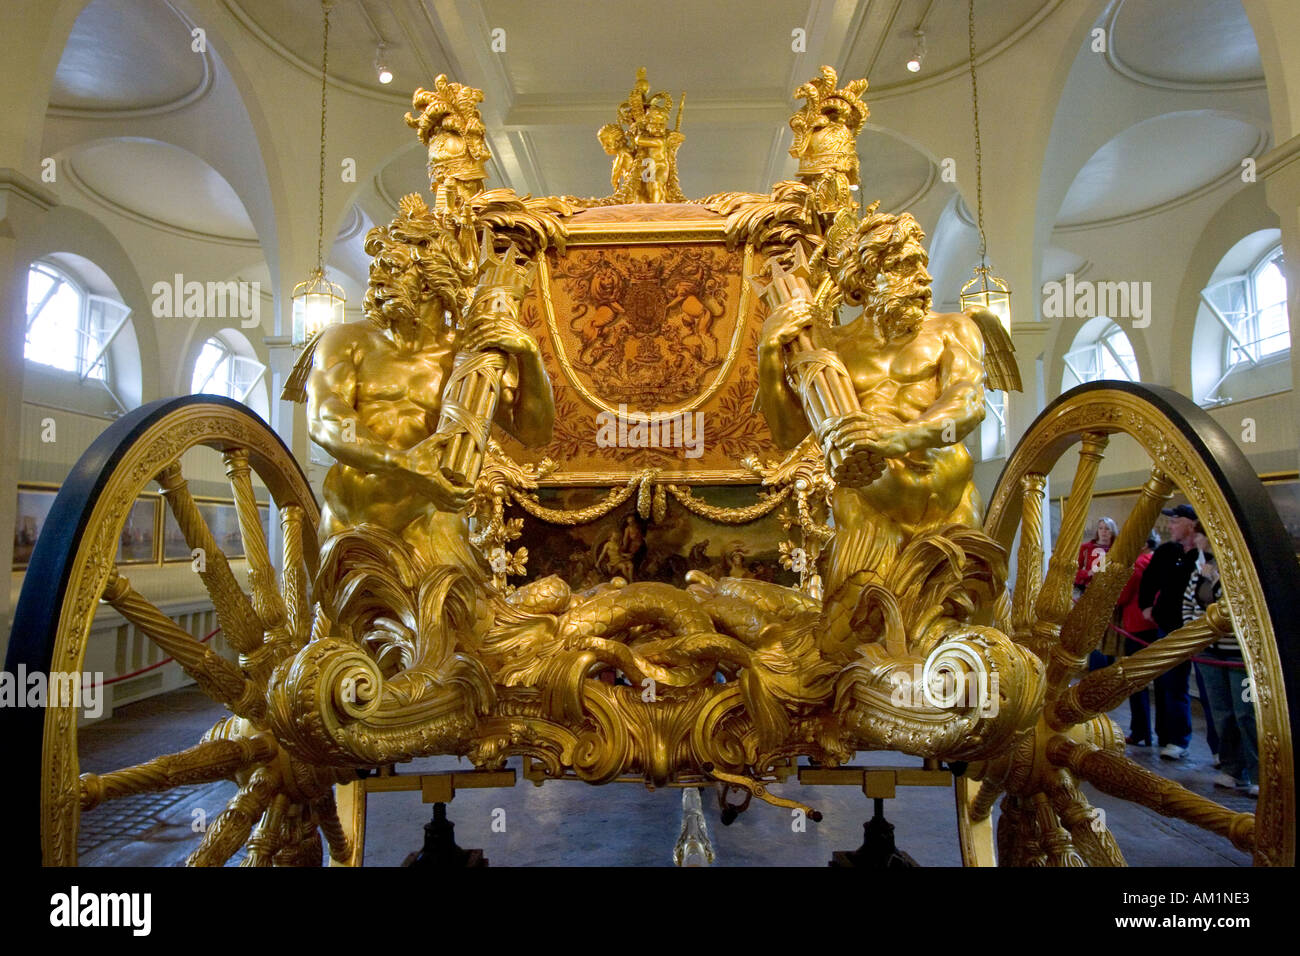 Die Krönung Gold State Coach in der Royal Mews, die für König George III im Jahre 1762 erbaut wurde Stockfoto